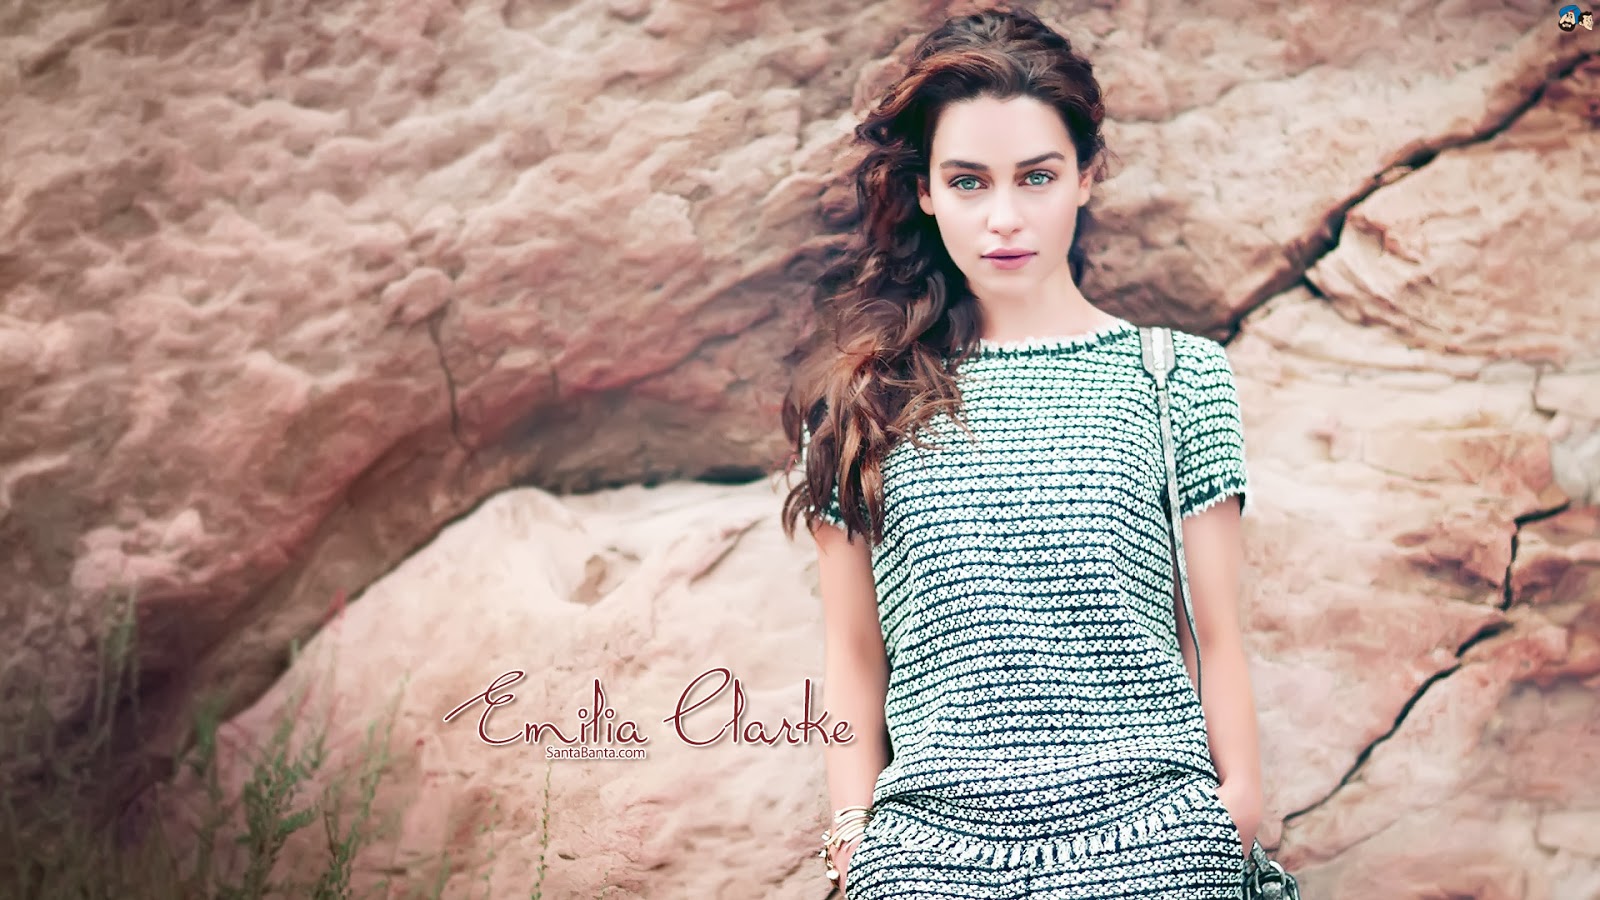 emilia clarke hd hintergrundbilder,kleidung,schönheit,model,mode,kleid